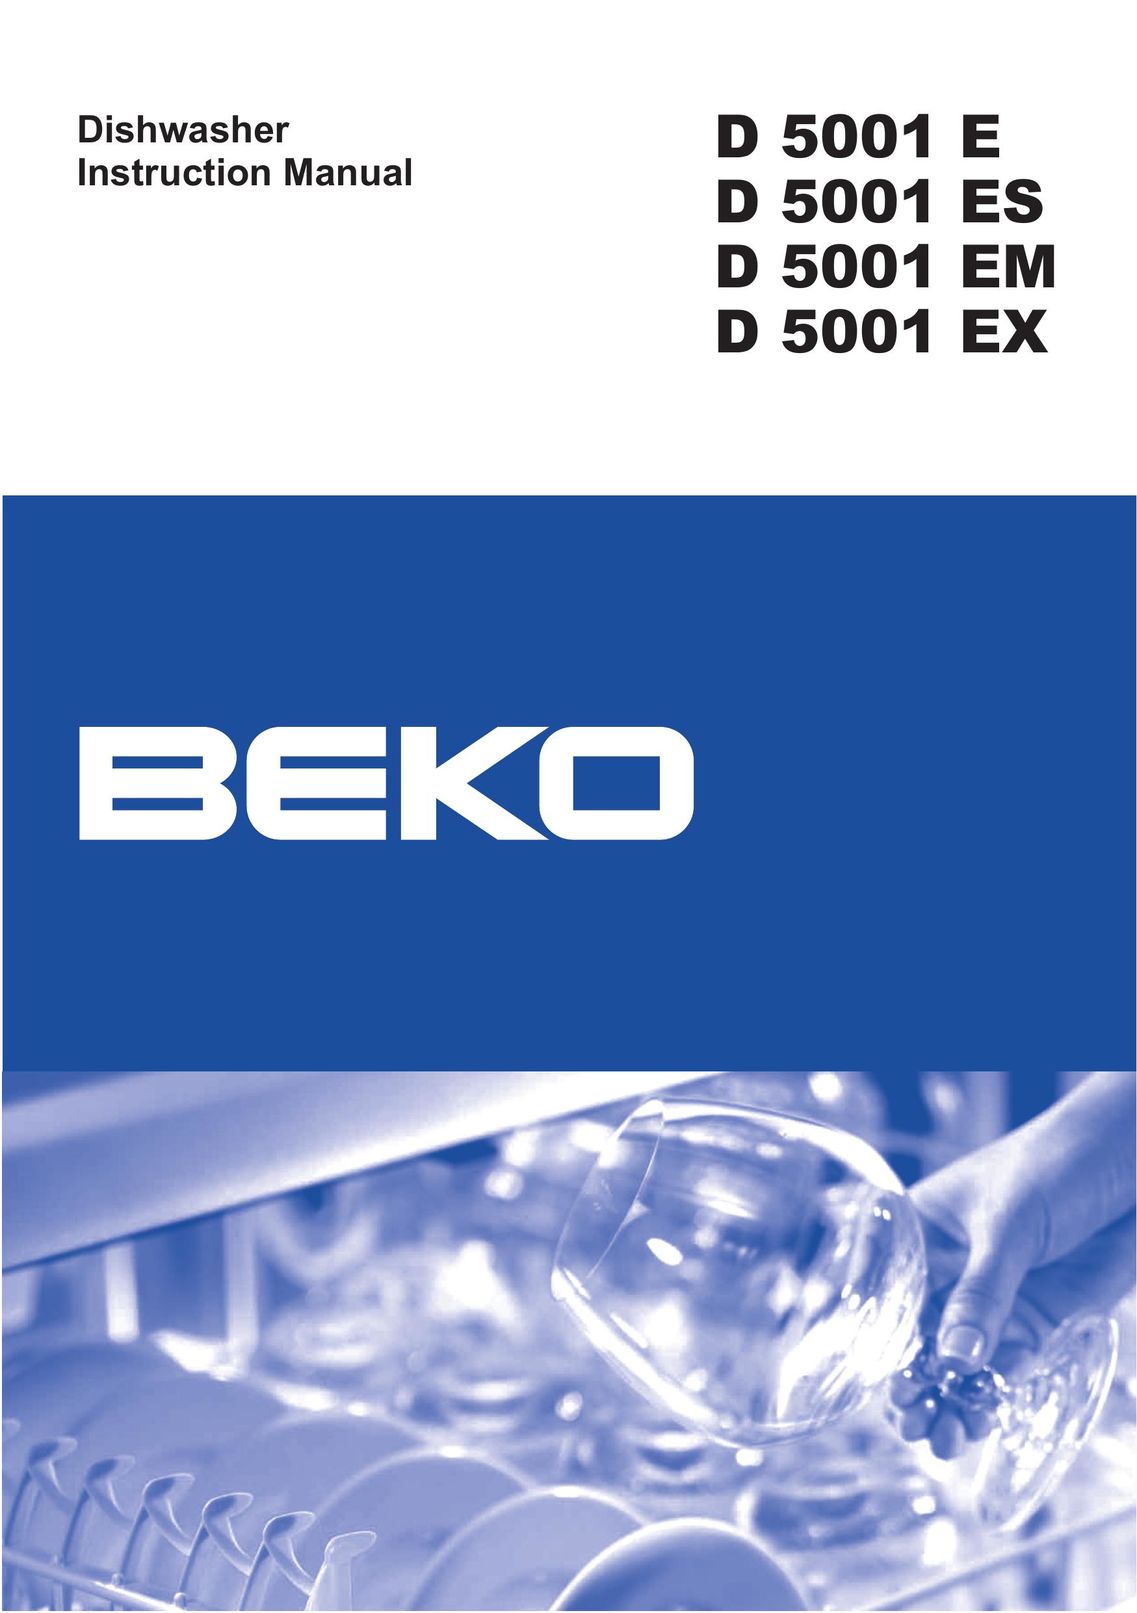 Beko D 5001 EM Dishwasher User Manual